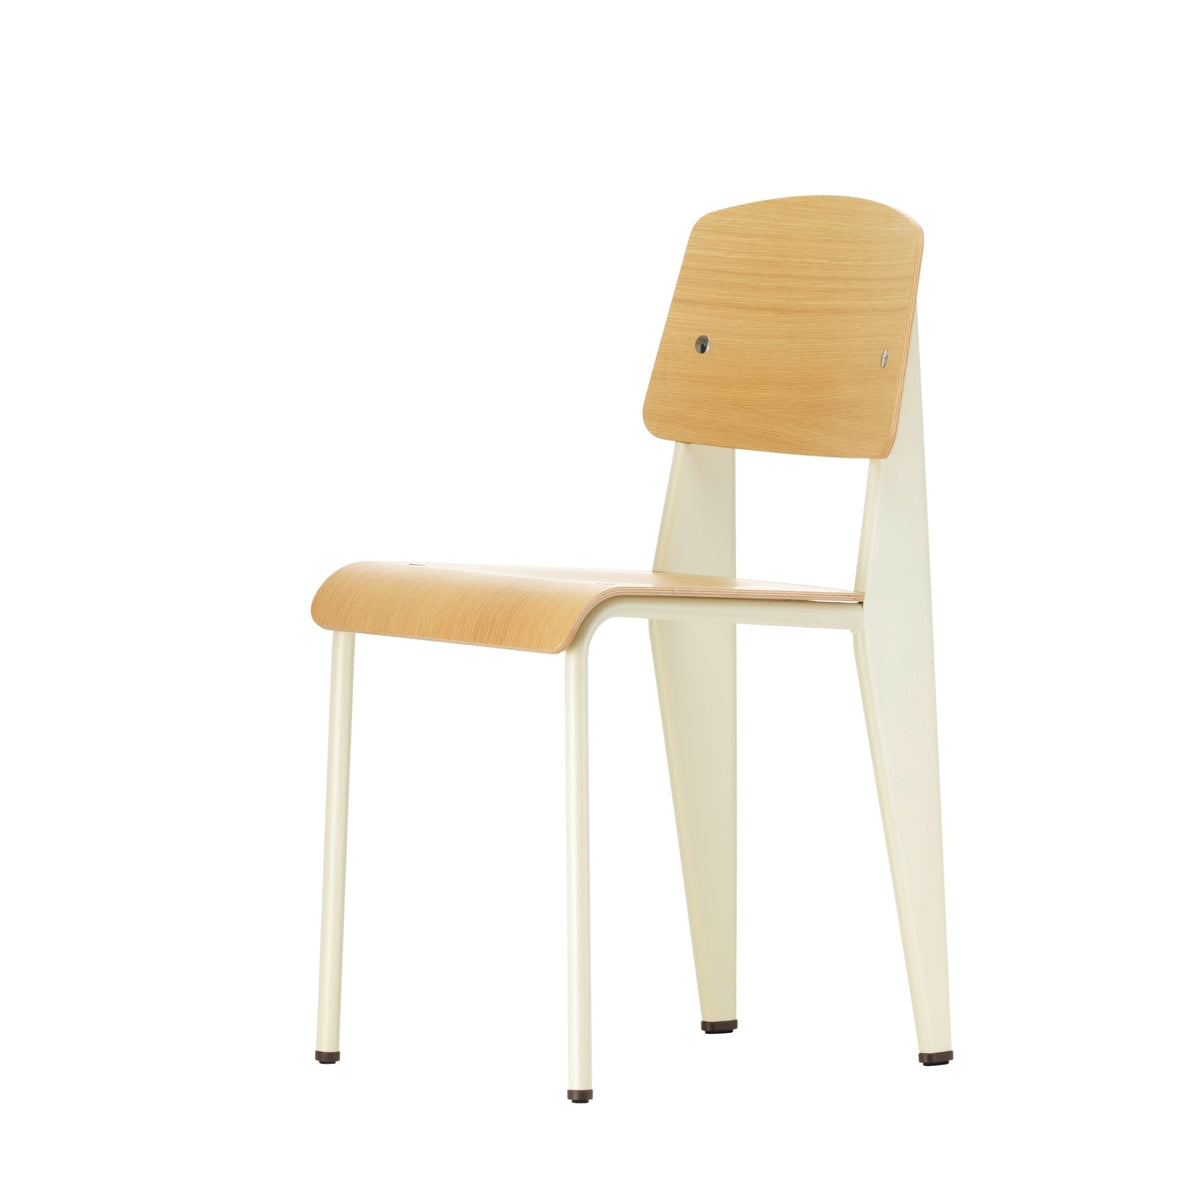 Vitra Standard tuoli tammi/blanc colombe - Laatukaluste